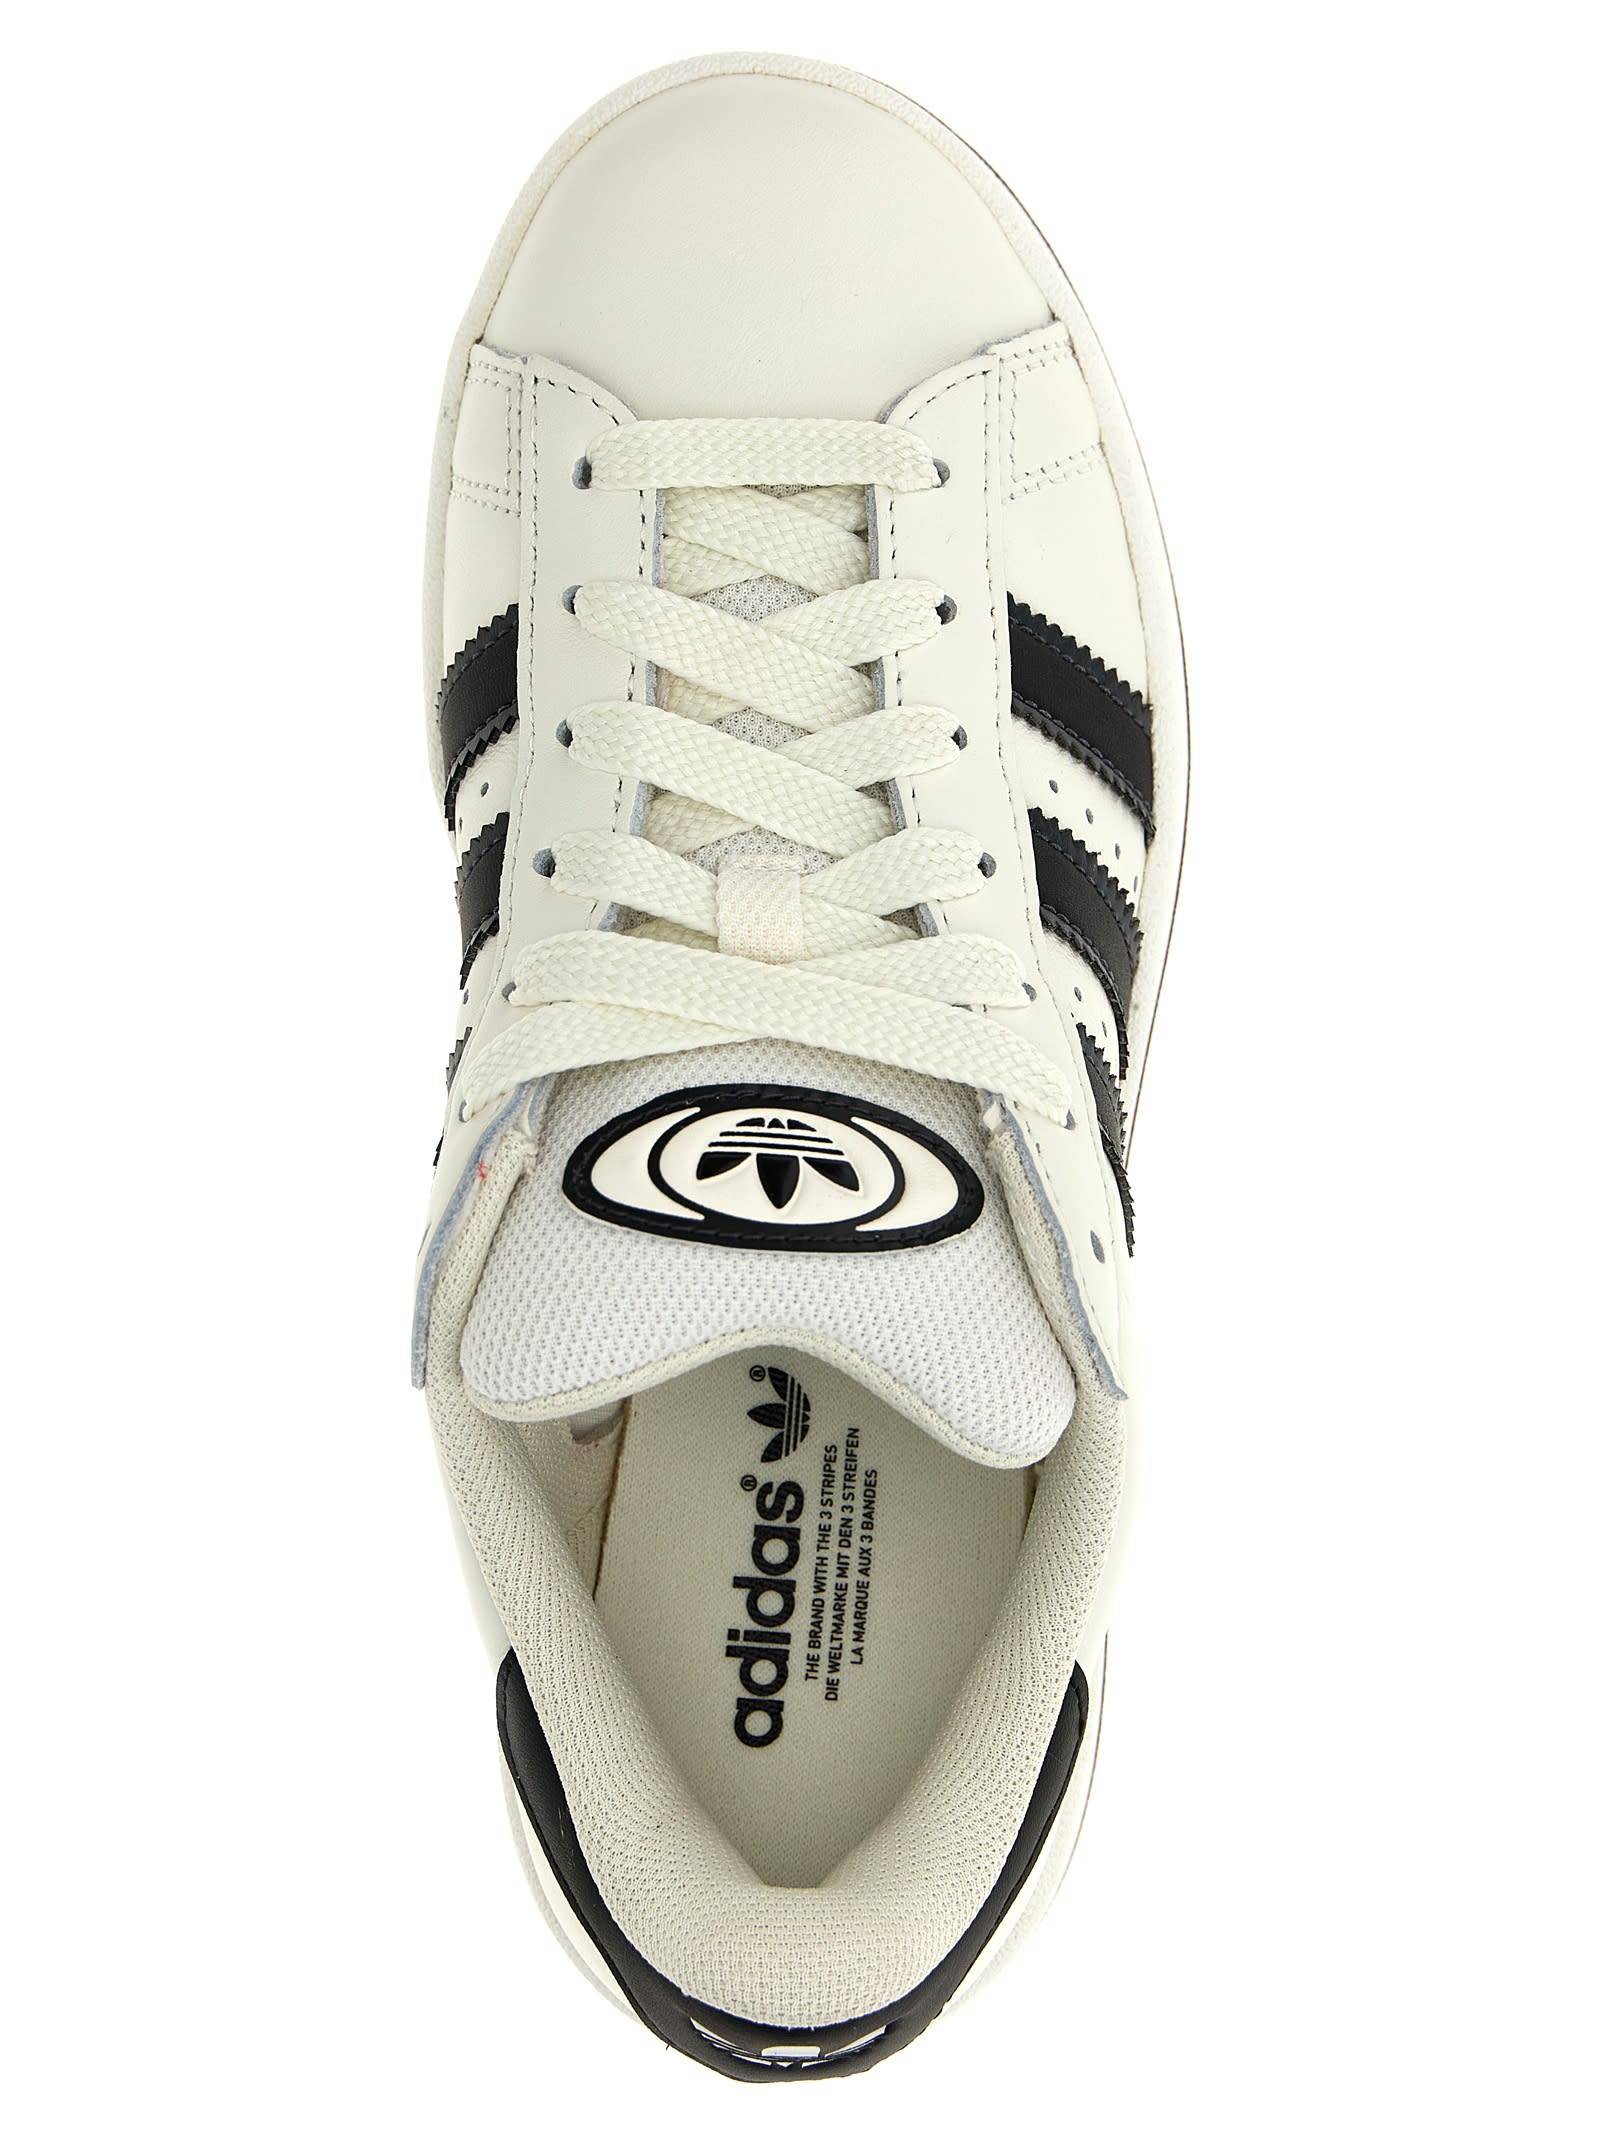 Shop Adidas Originals Campus 00s Sneakers In White/black